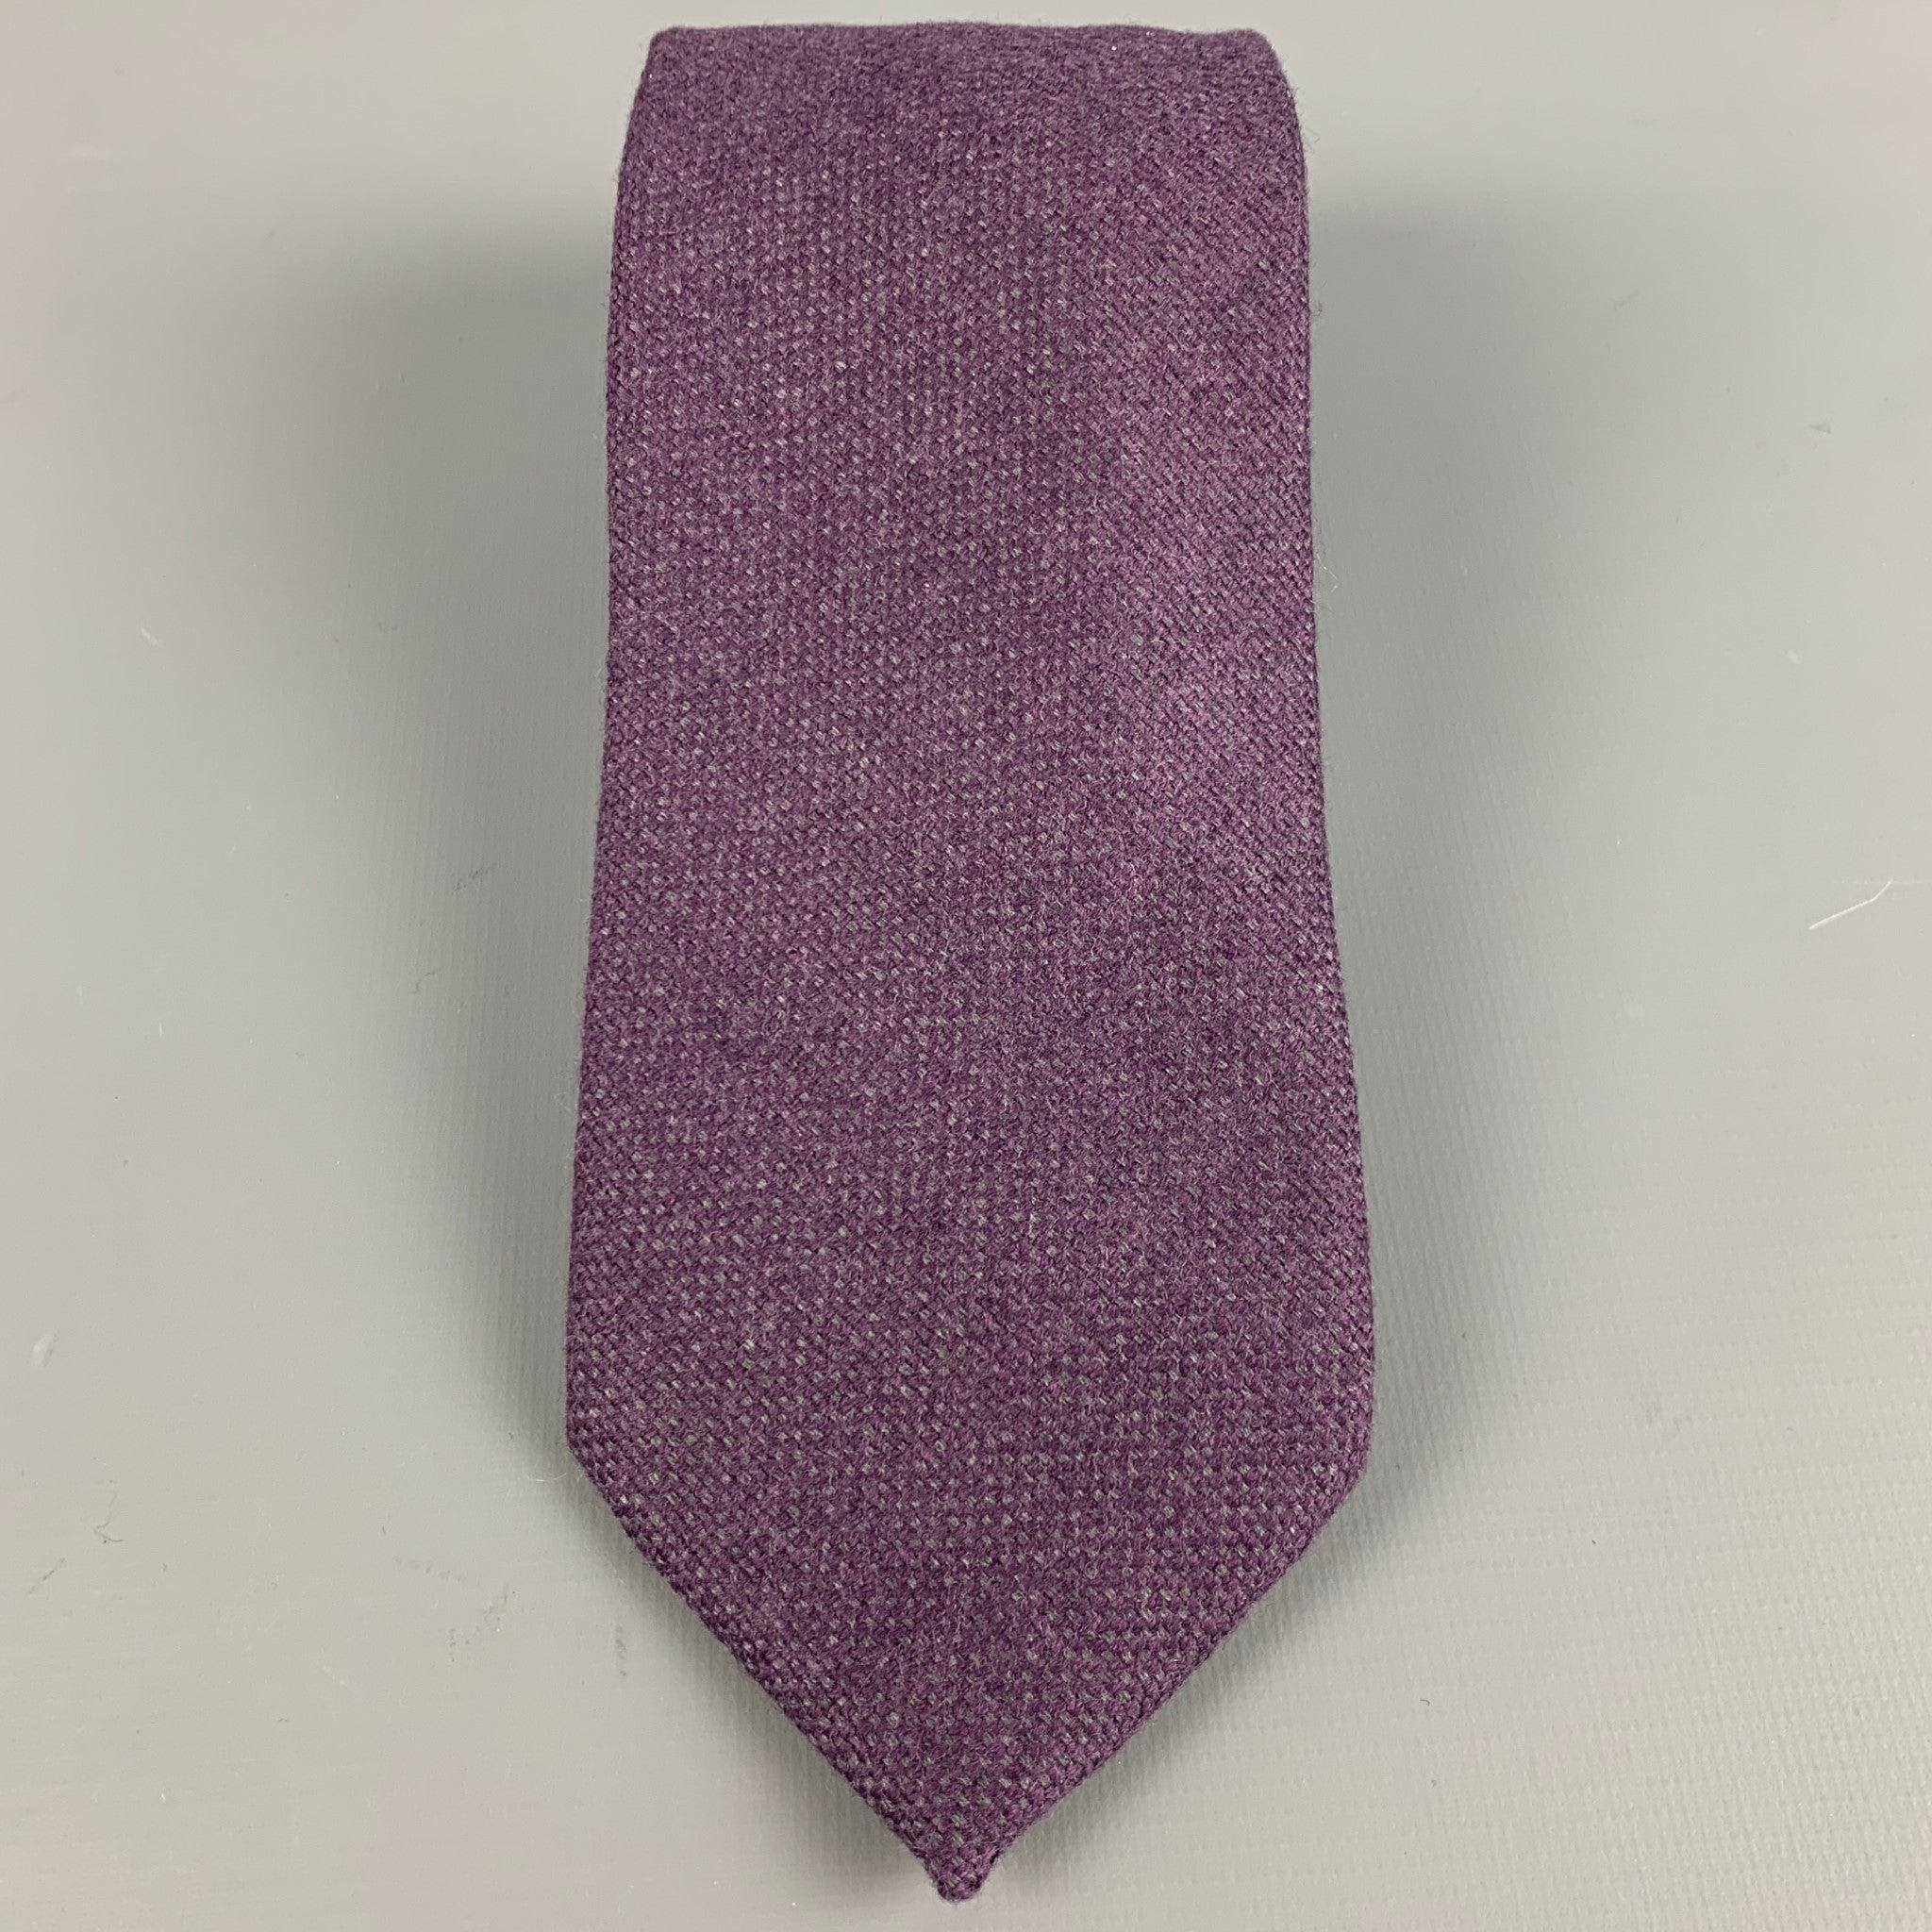 LUCIANO BARBERA Krawatte
aus violetter und grauer Wolle mit einem dezenten Webmuster. Made in Italy. sehr guter gebrauchter Zustand. Leichte Gebrauchsspuren. 

Abmessungen: 
  Breite: 3 Zoll Länge: 59 Zoll 
  
  
 
Referenz: 127746
Kategorie: